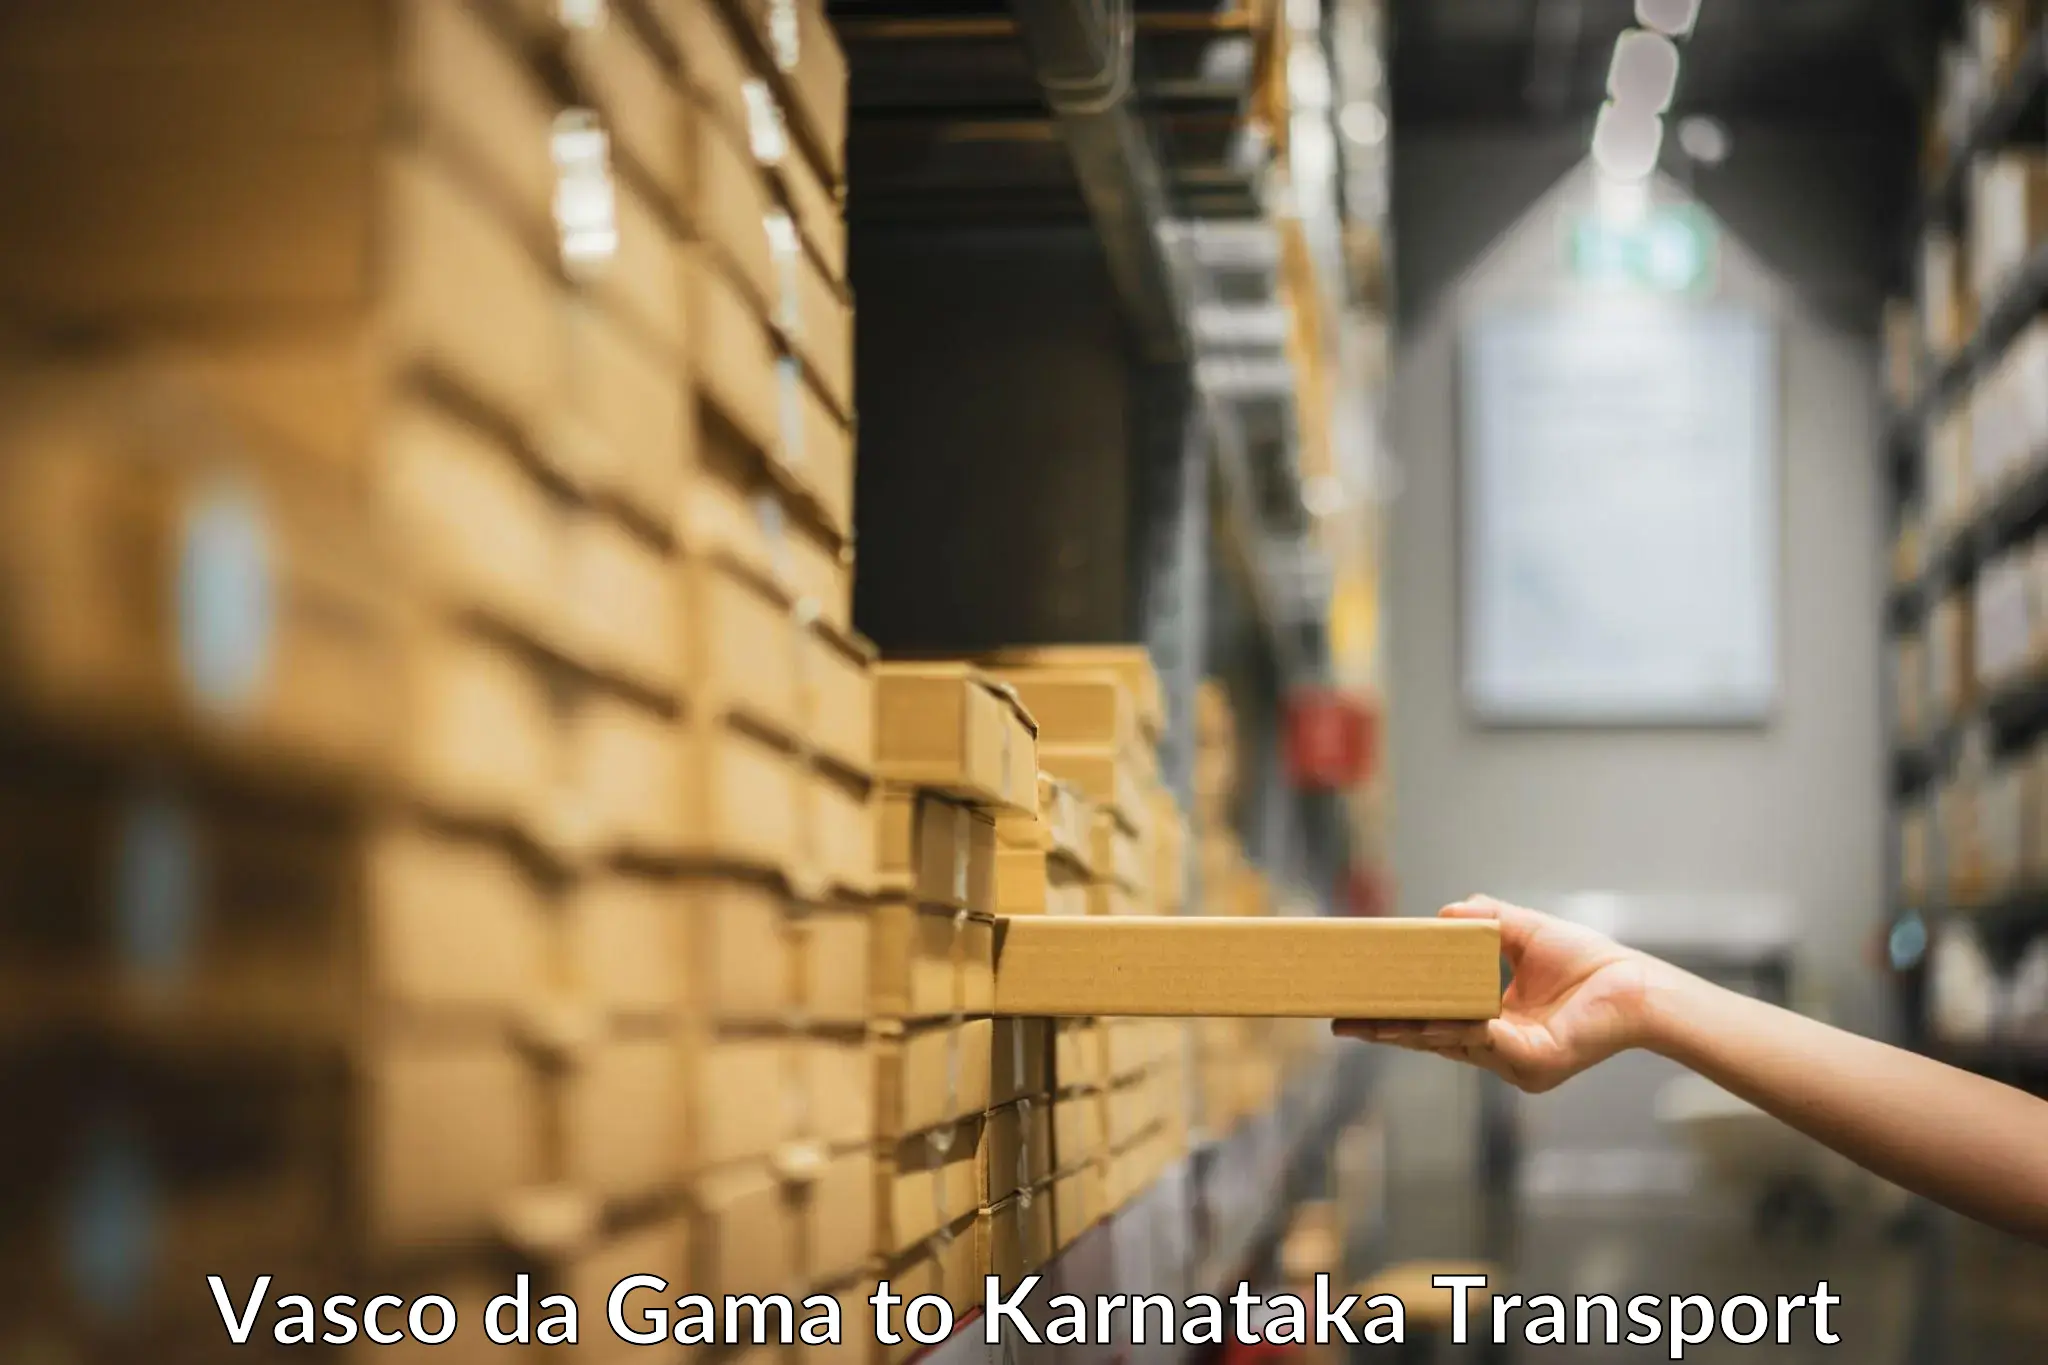 Material transport services Vasco da Gama to Mannaekhelli